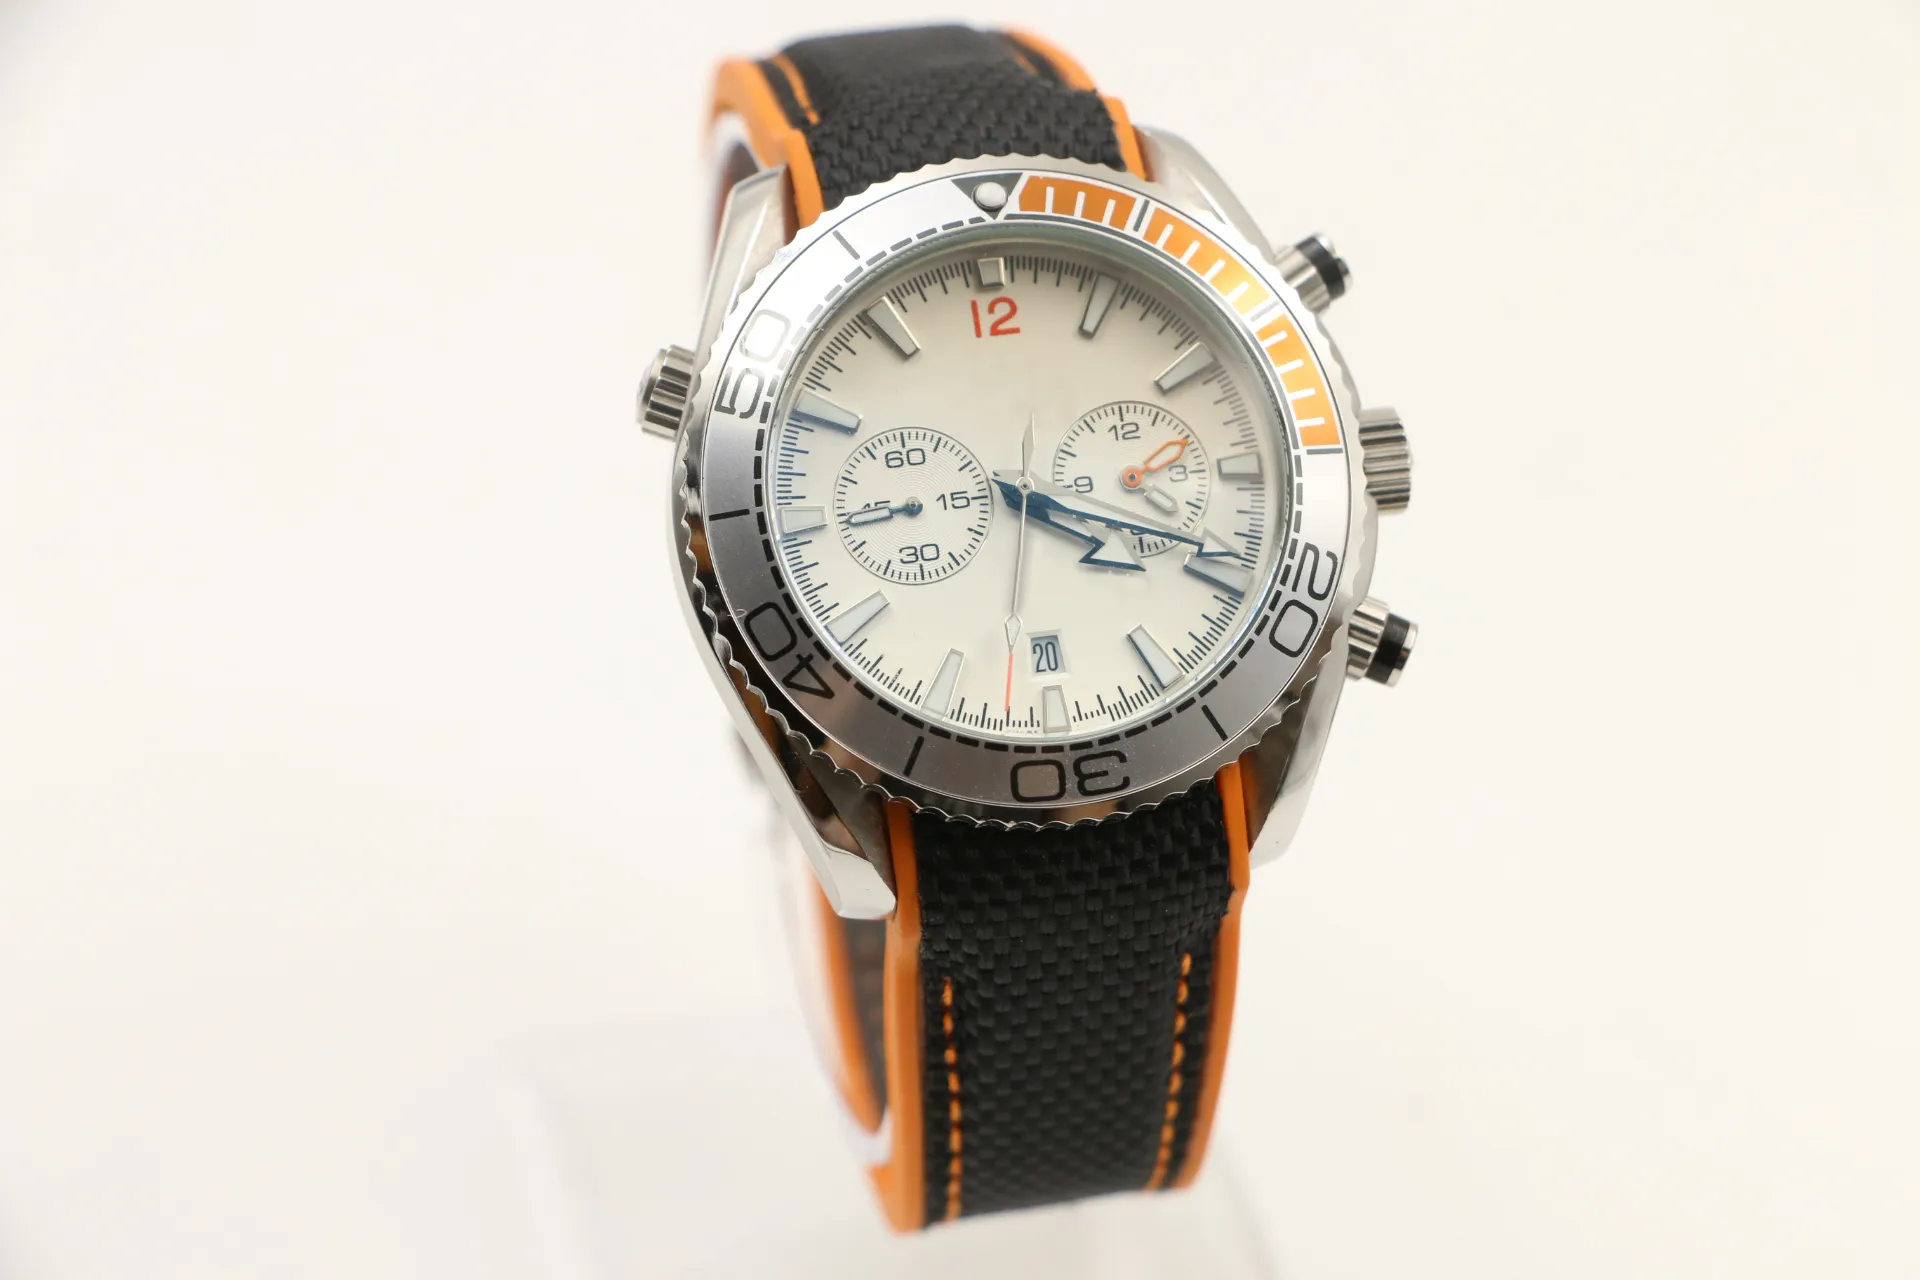 3スタイルメンズスポーツダイバーの時計Quartzムーブメント腕時計エージェント007お気に入りの腕時計駆動可能なベゼル日付ディスプレイno9411298